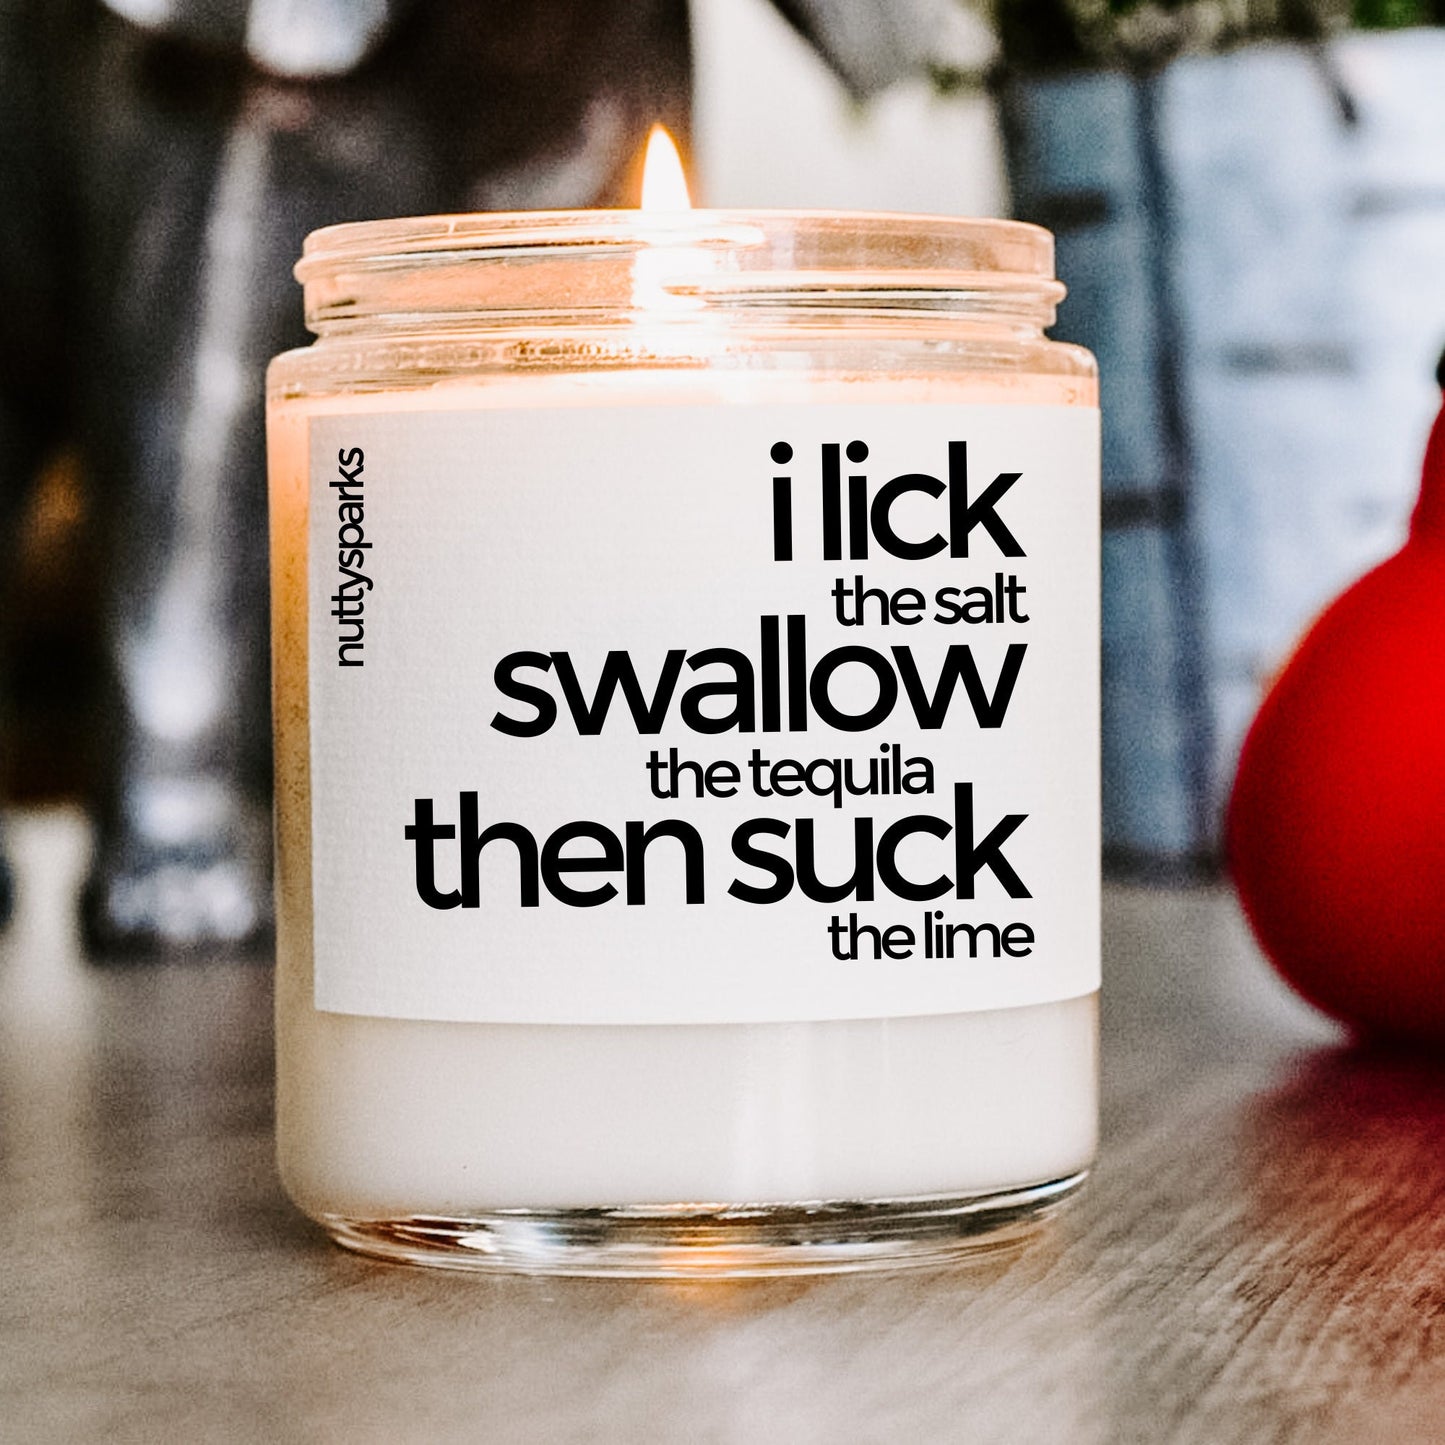 i lick the salt swallow then suck